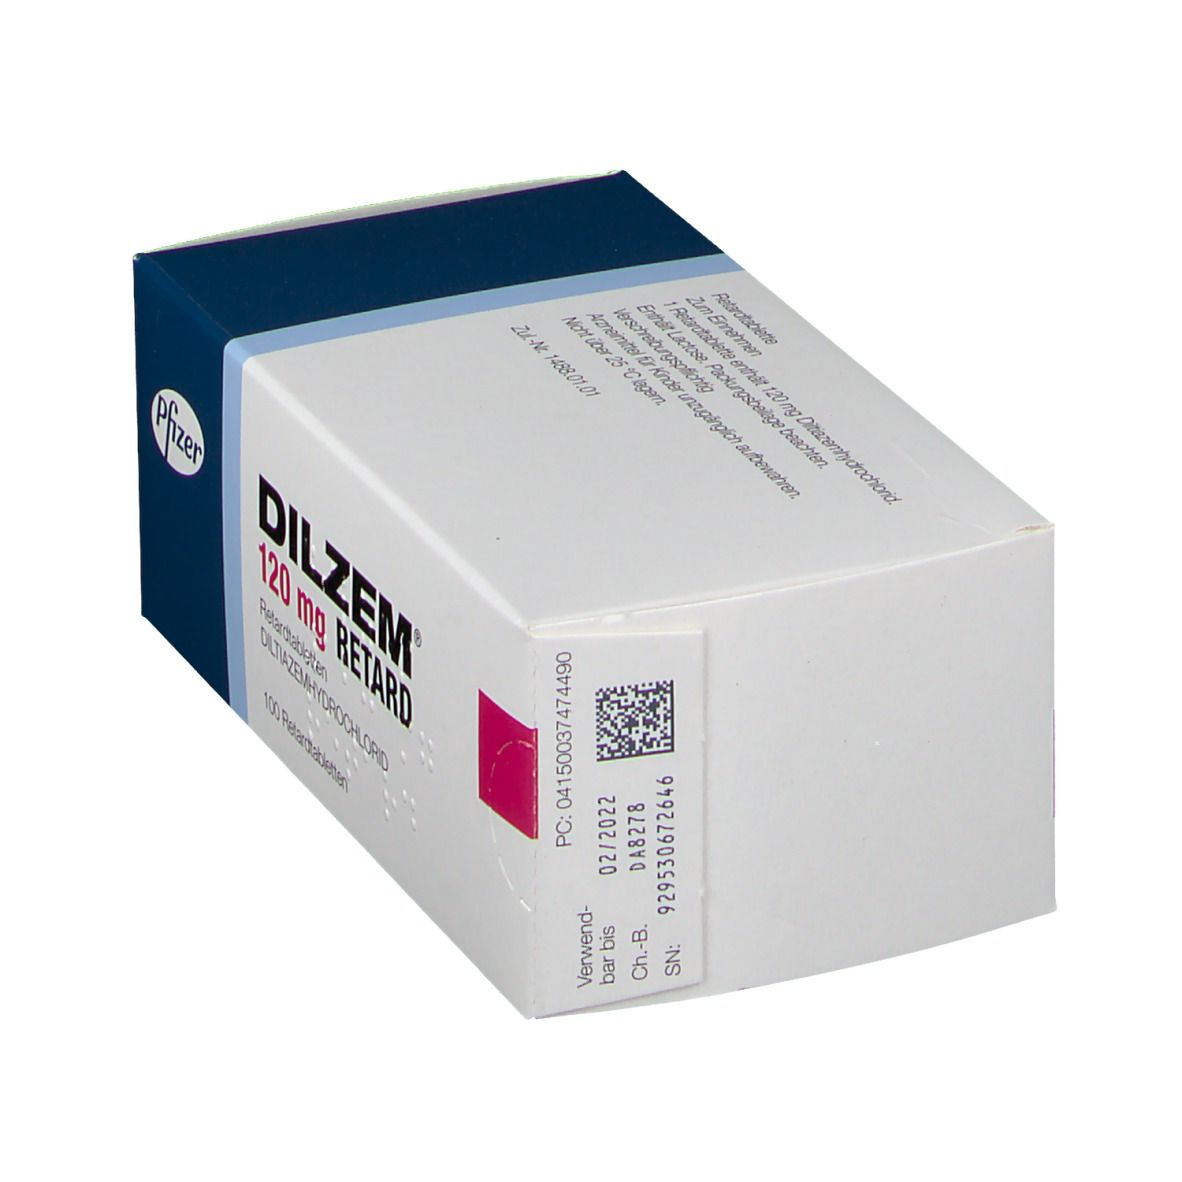 DILZEM® 120 mg RETARD